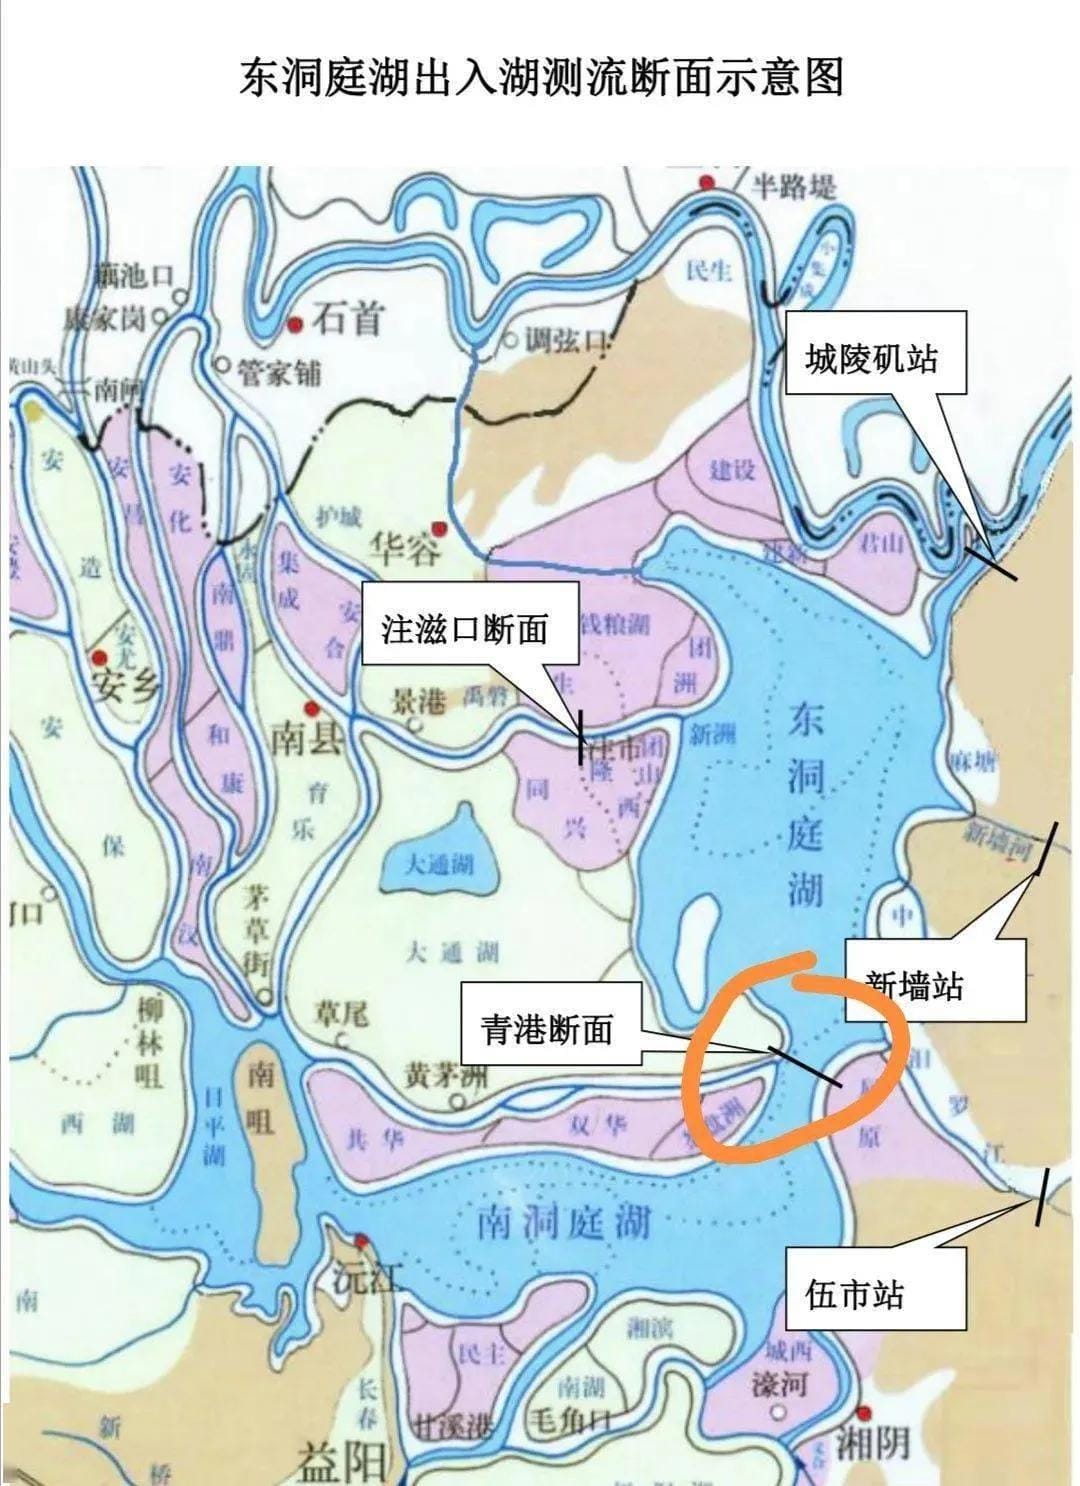 洞庭湖是我国第二大淡水湖吗? 洞庭湖中国第几大淡水湖(图5)